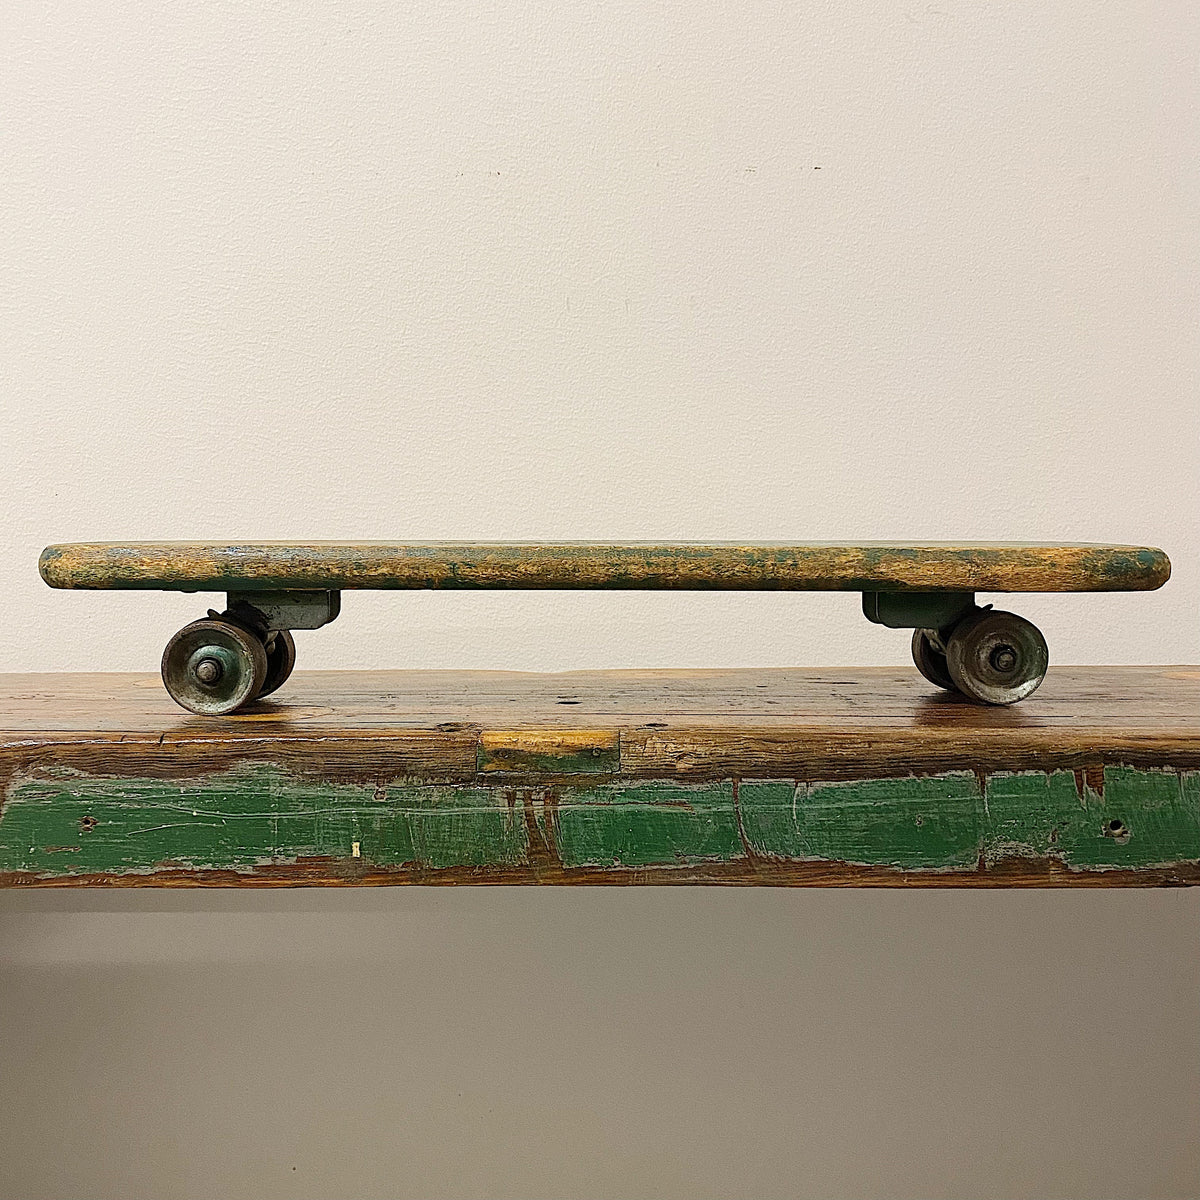 1950's Old School Metal Wheel Skateboard (Unbranded)